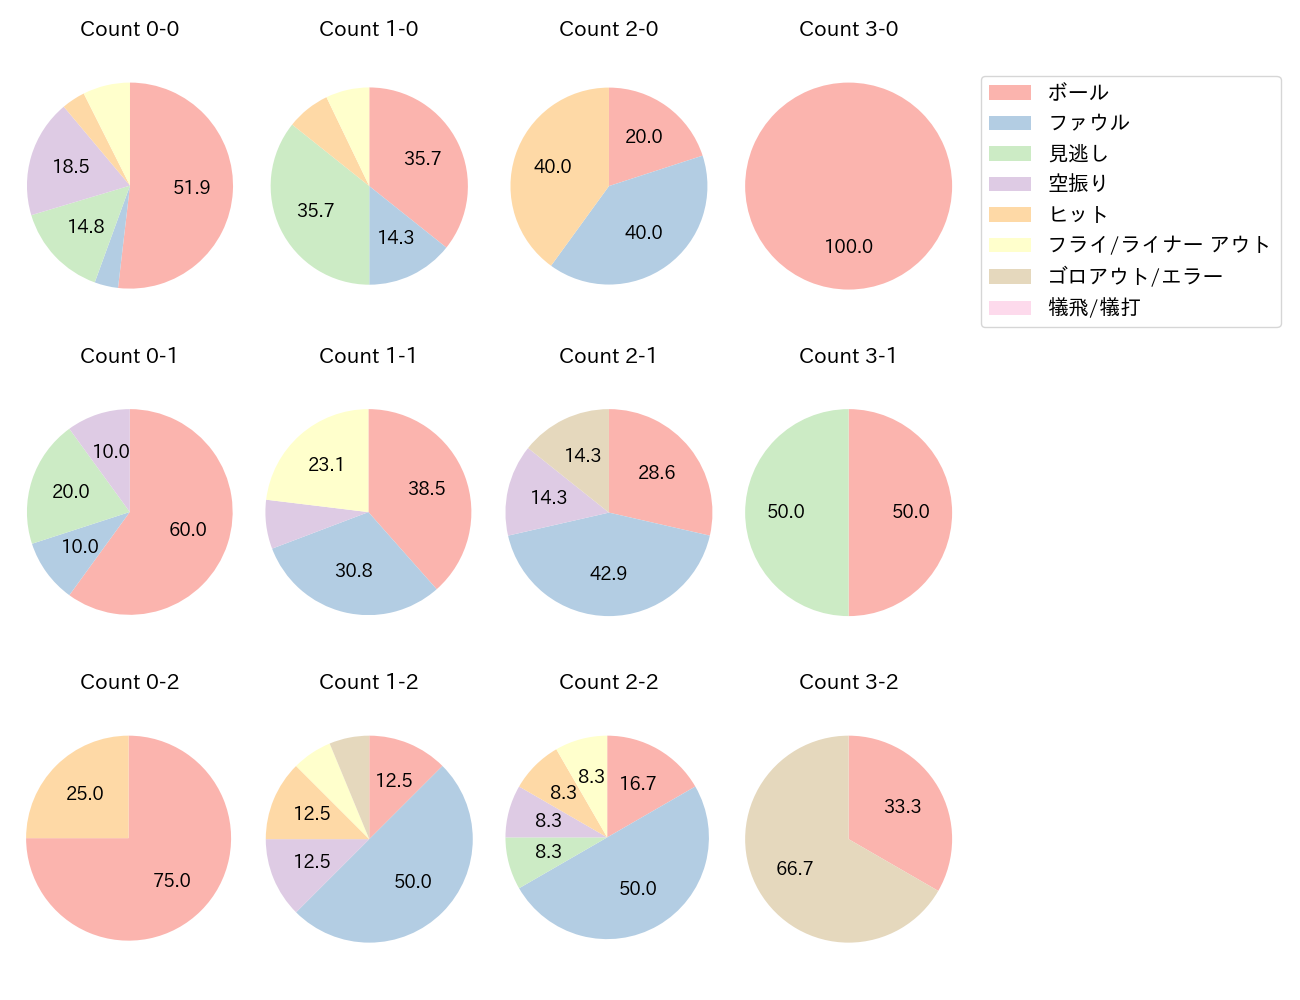 山本 泰寛の球数分布(2022年4月)